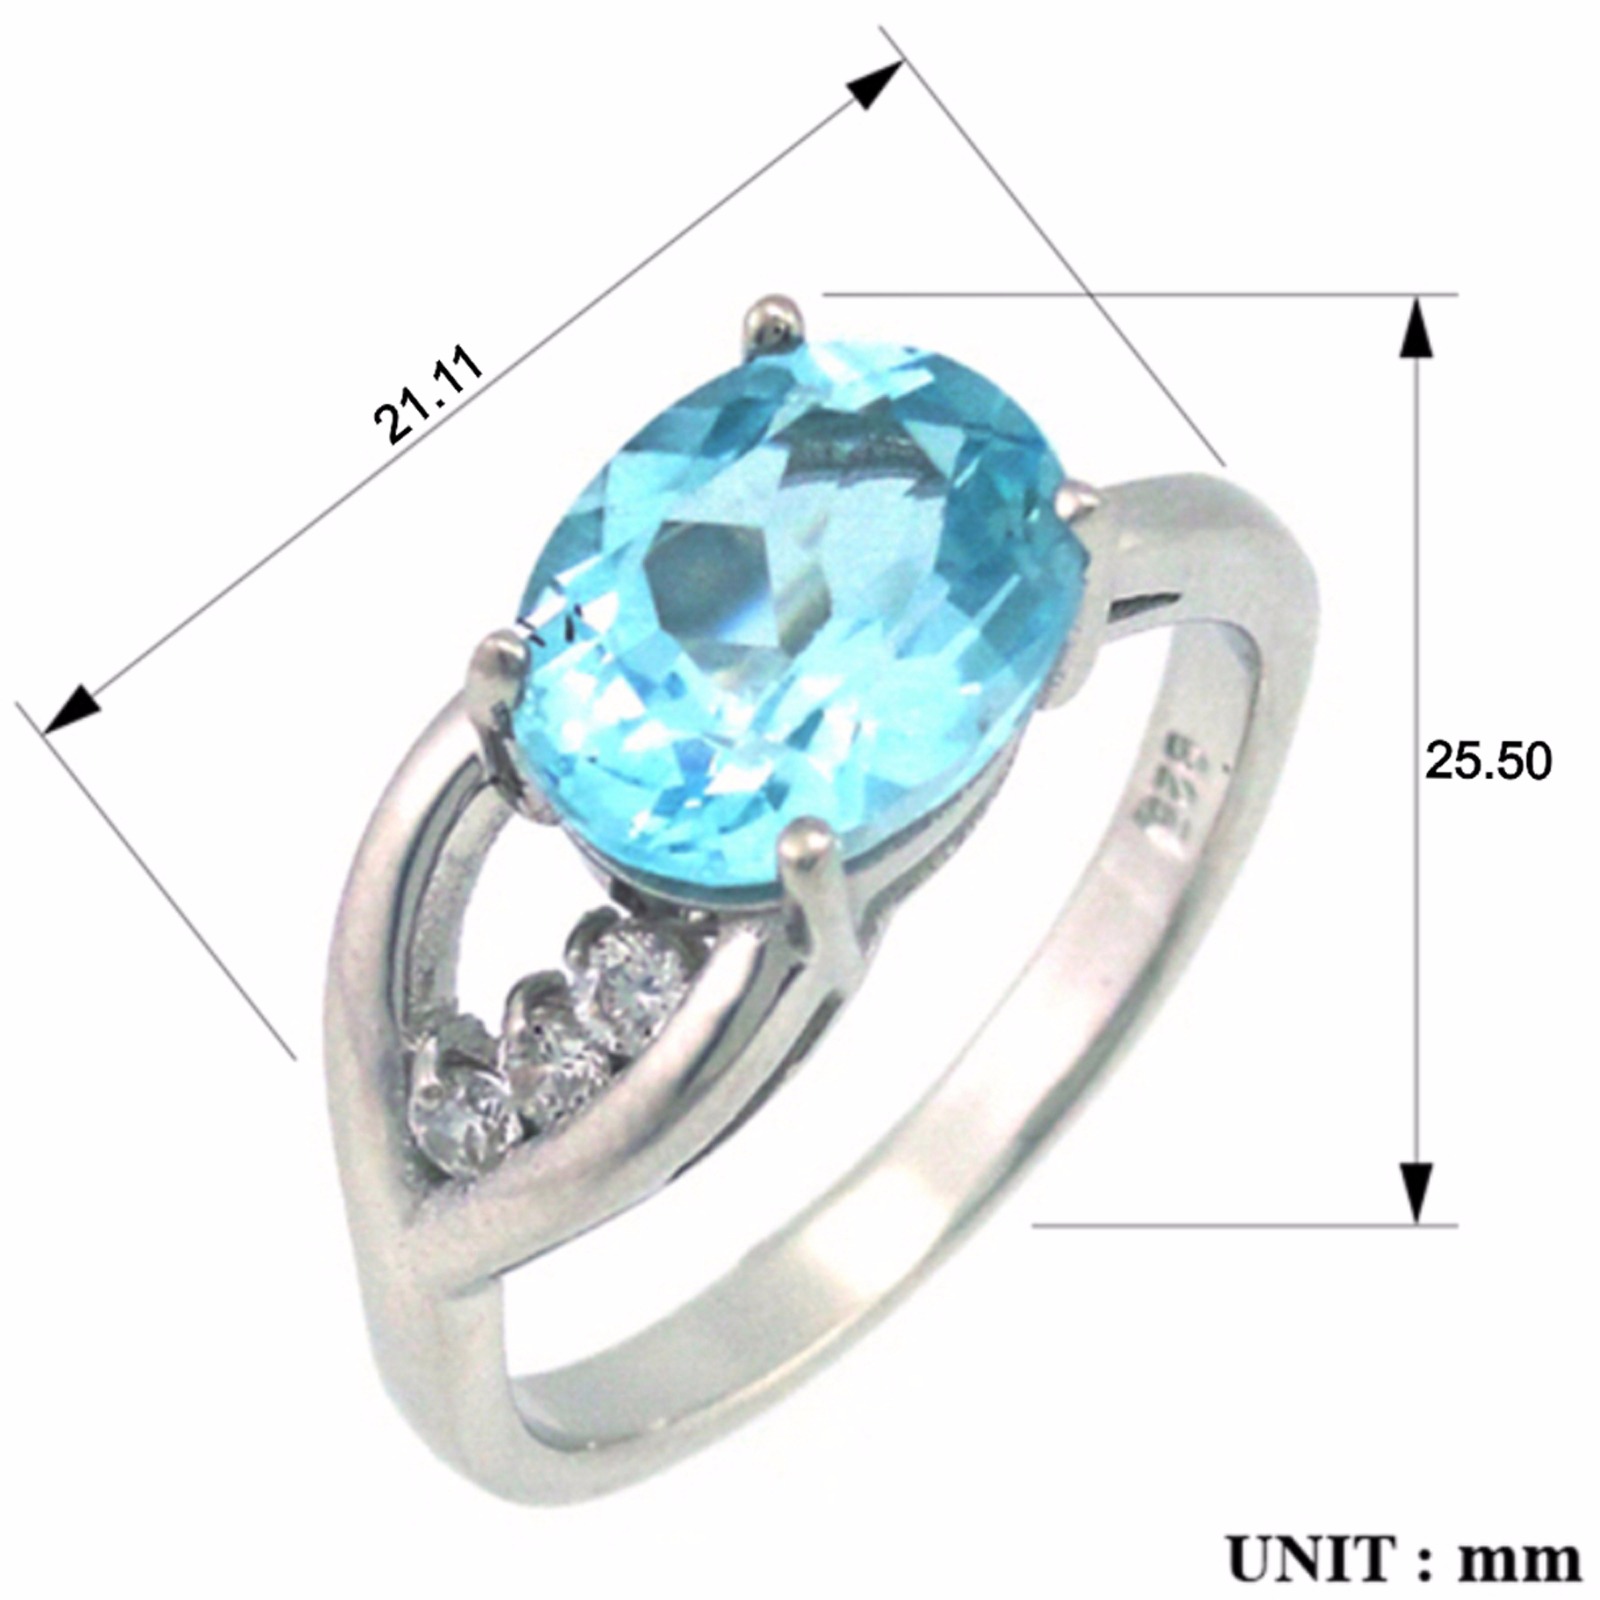 Кольцо с топазом голубым природным, фианитом из Серебра